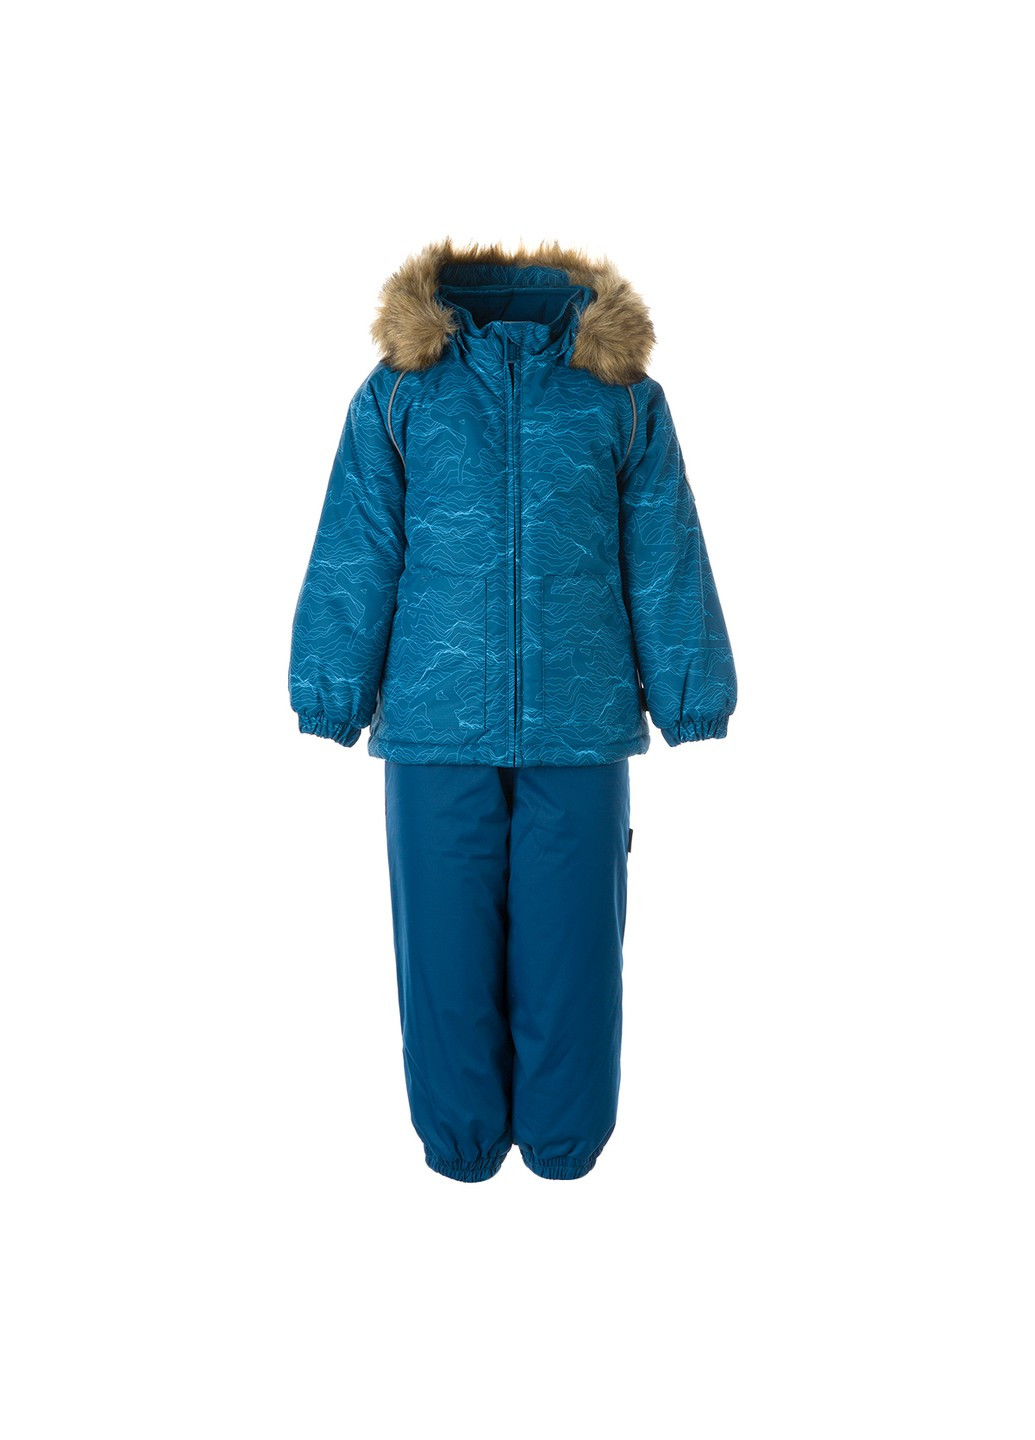 Бирюзовый зимний комплект зимний (куртка + полукомбинезон) avery Huppa